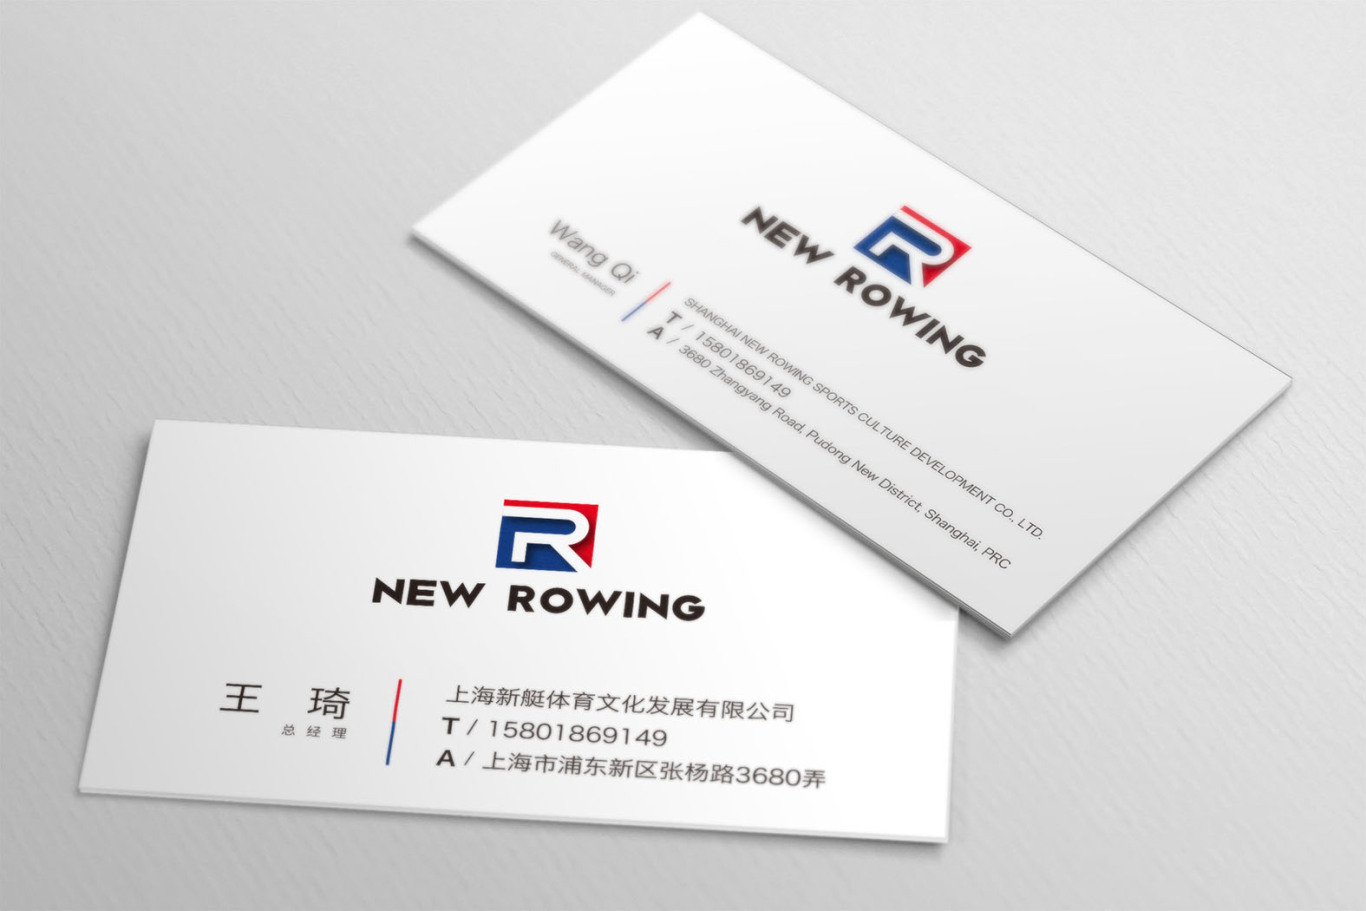 上海新艇体育集团宣传资料图1